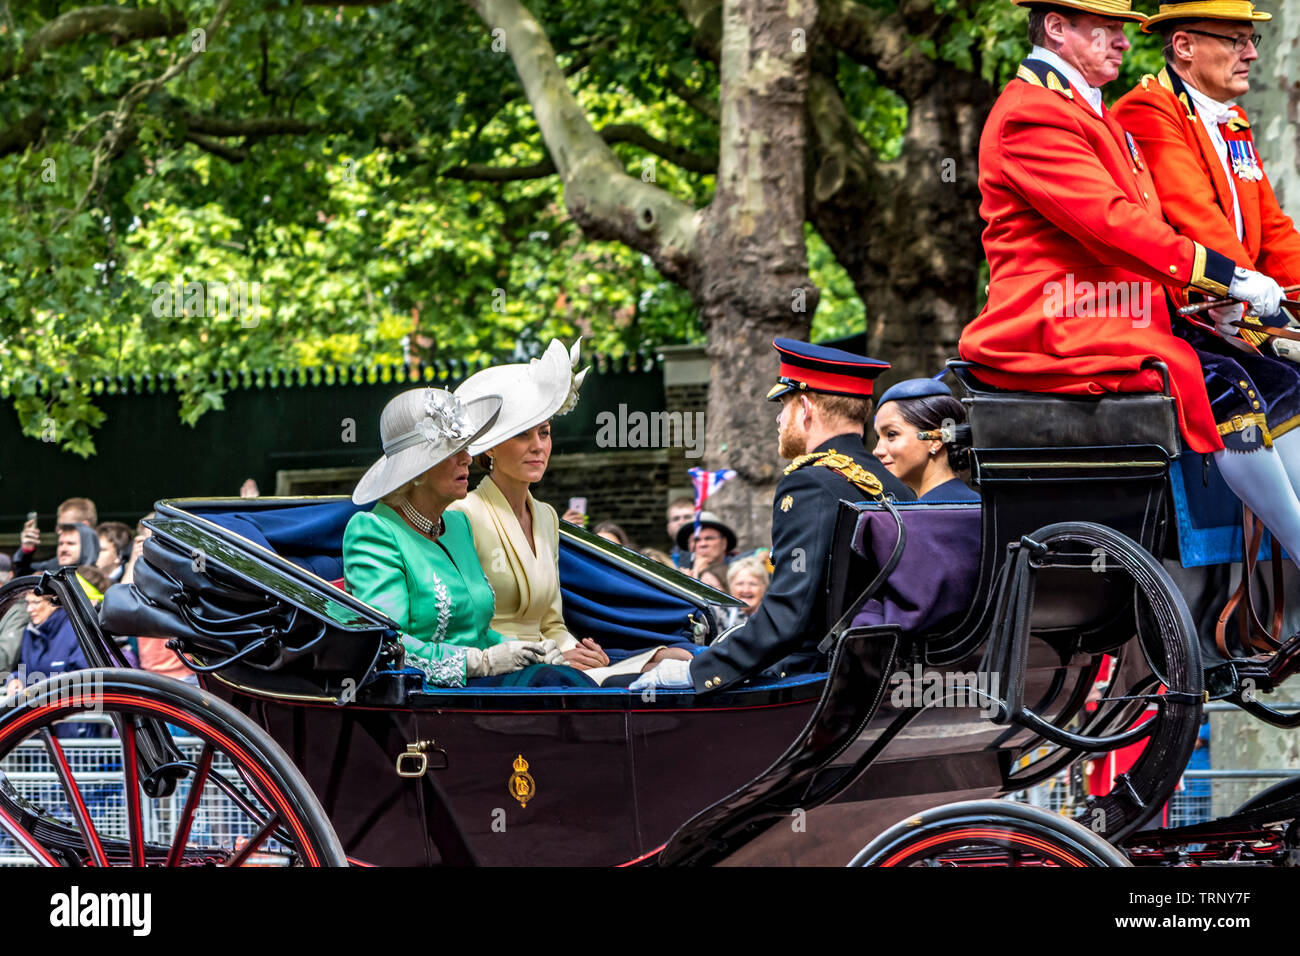 Le duc et la duchesse de Sussex, la duchesse de Cambridge et la duchesse de Cornwall dans une calèche sur le Mall à Trooping The Color, Londres, Royaume-Uni, 2019 Banque D'Images